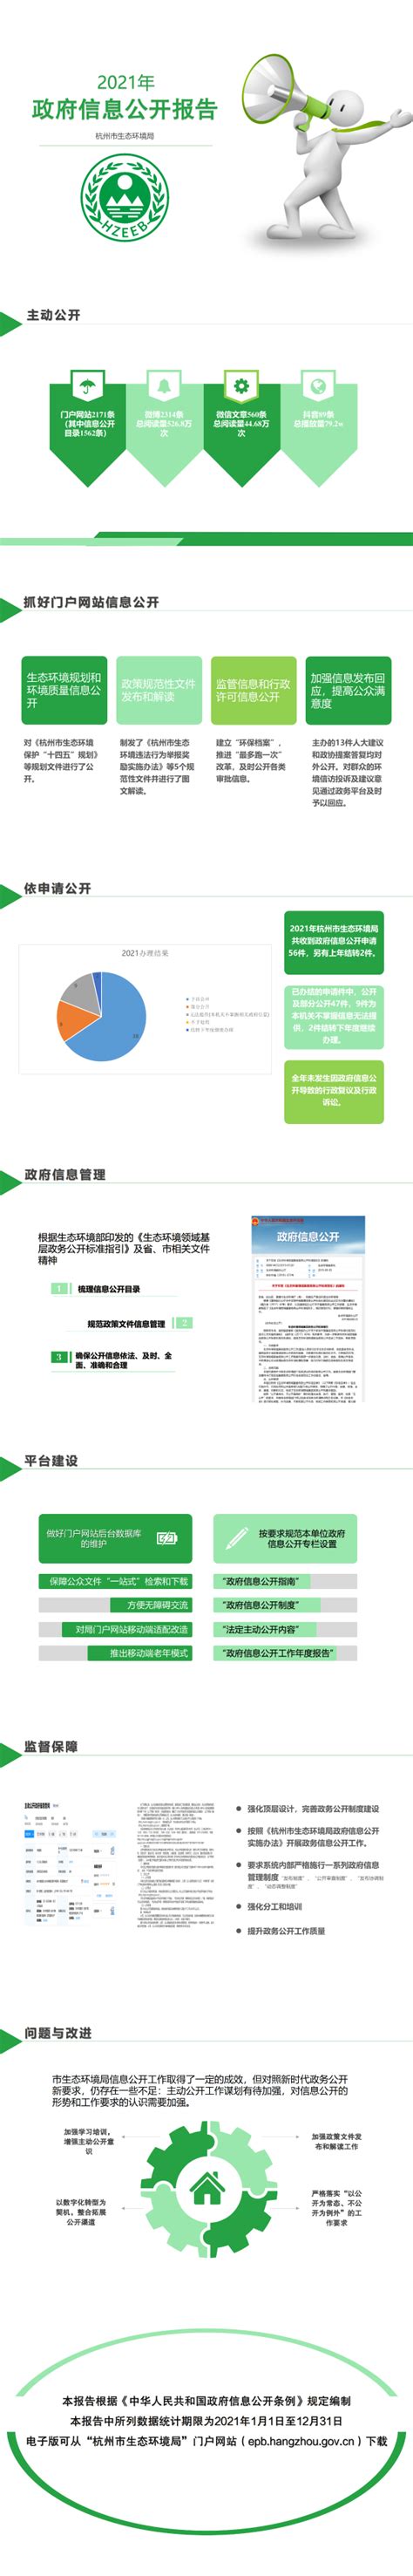 杭州市生态环境局2021年政府信息公开工作年度报告-图解